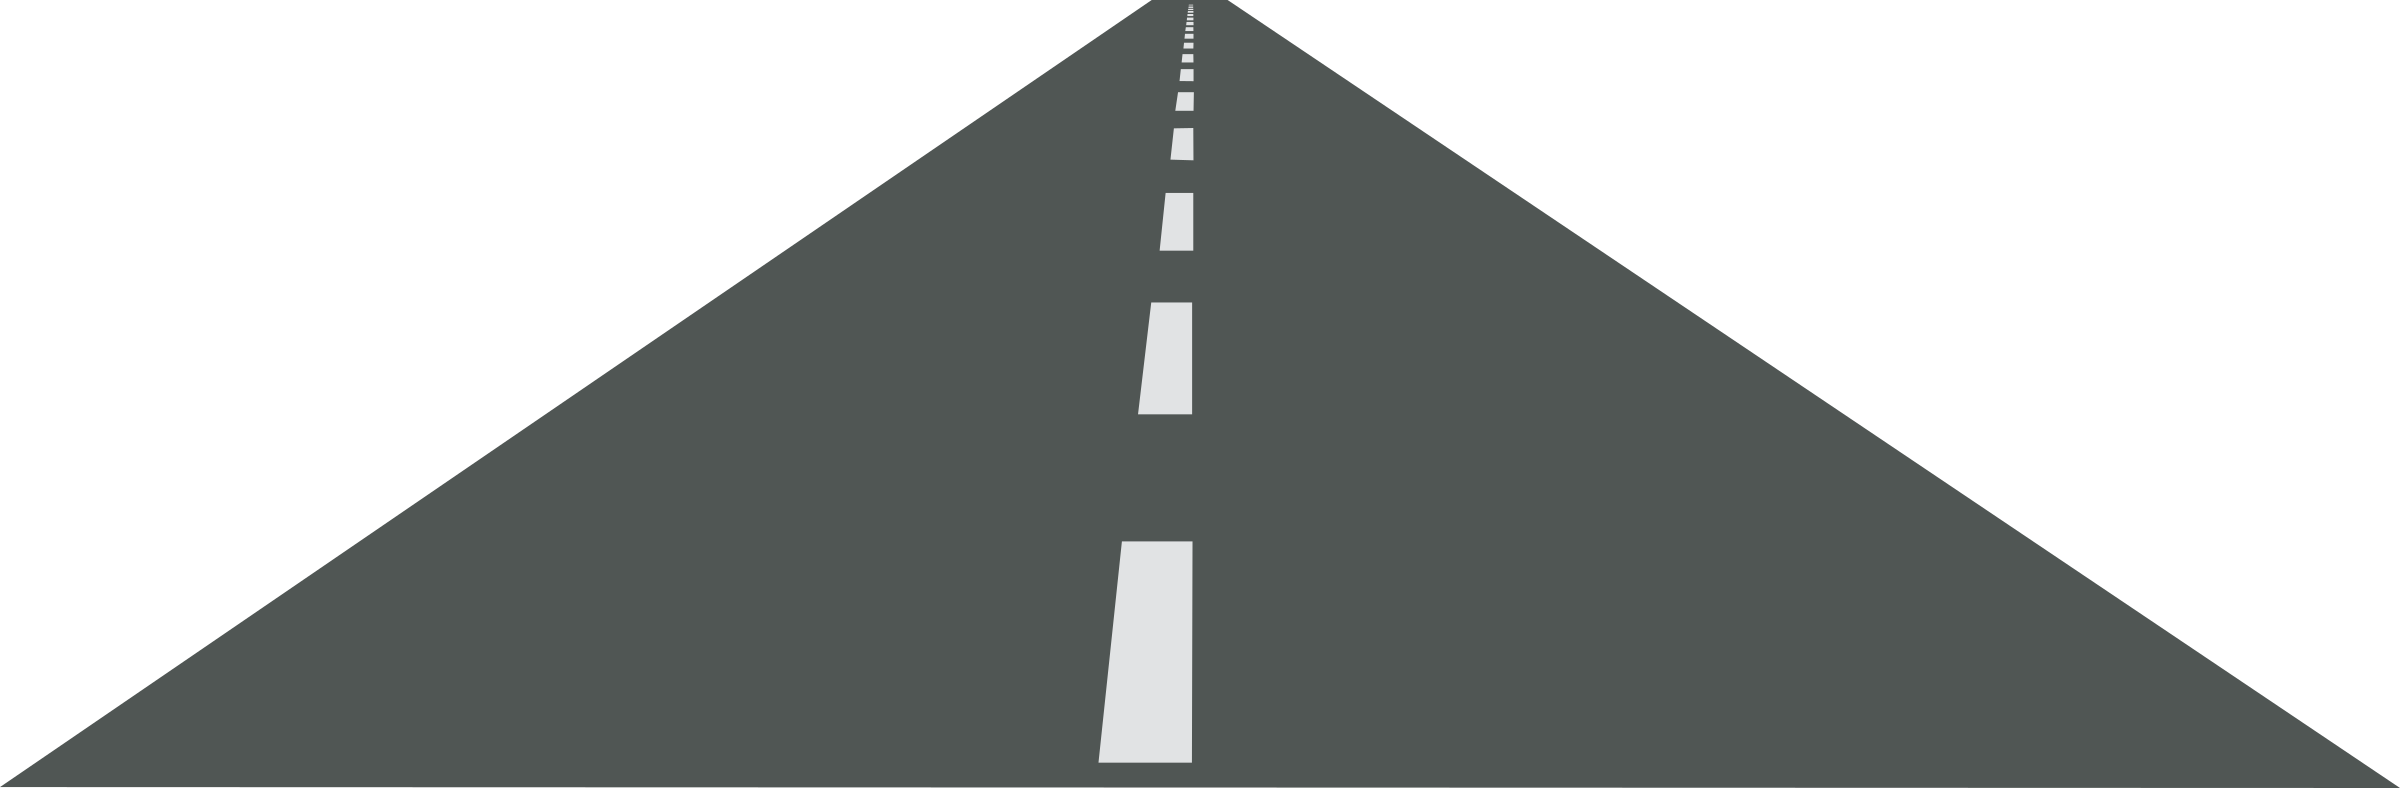 Road | High Way PNG Image